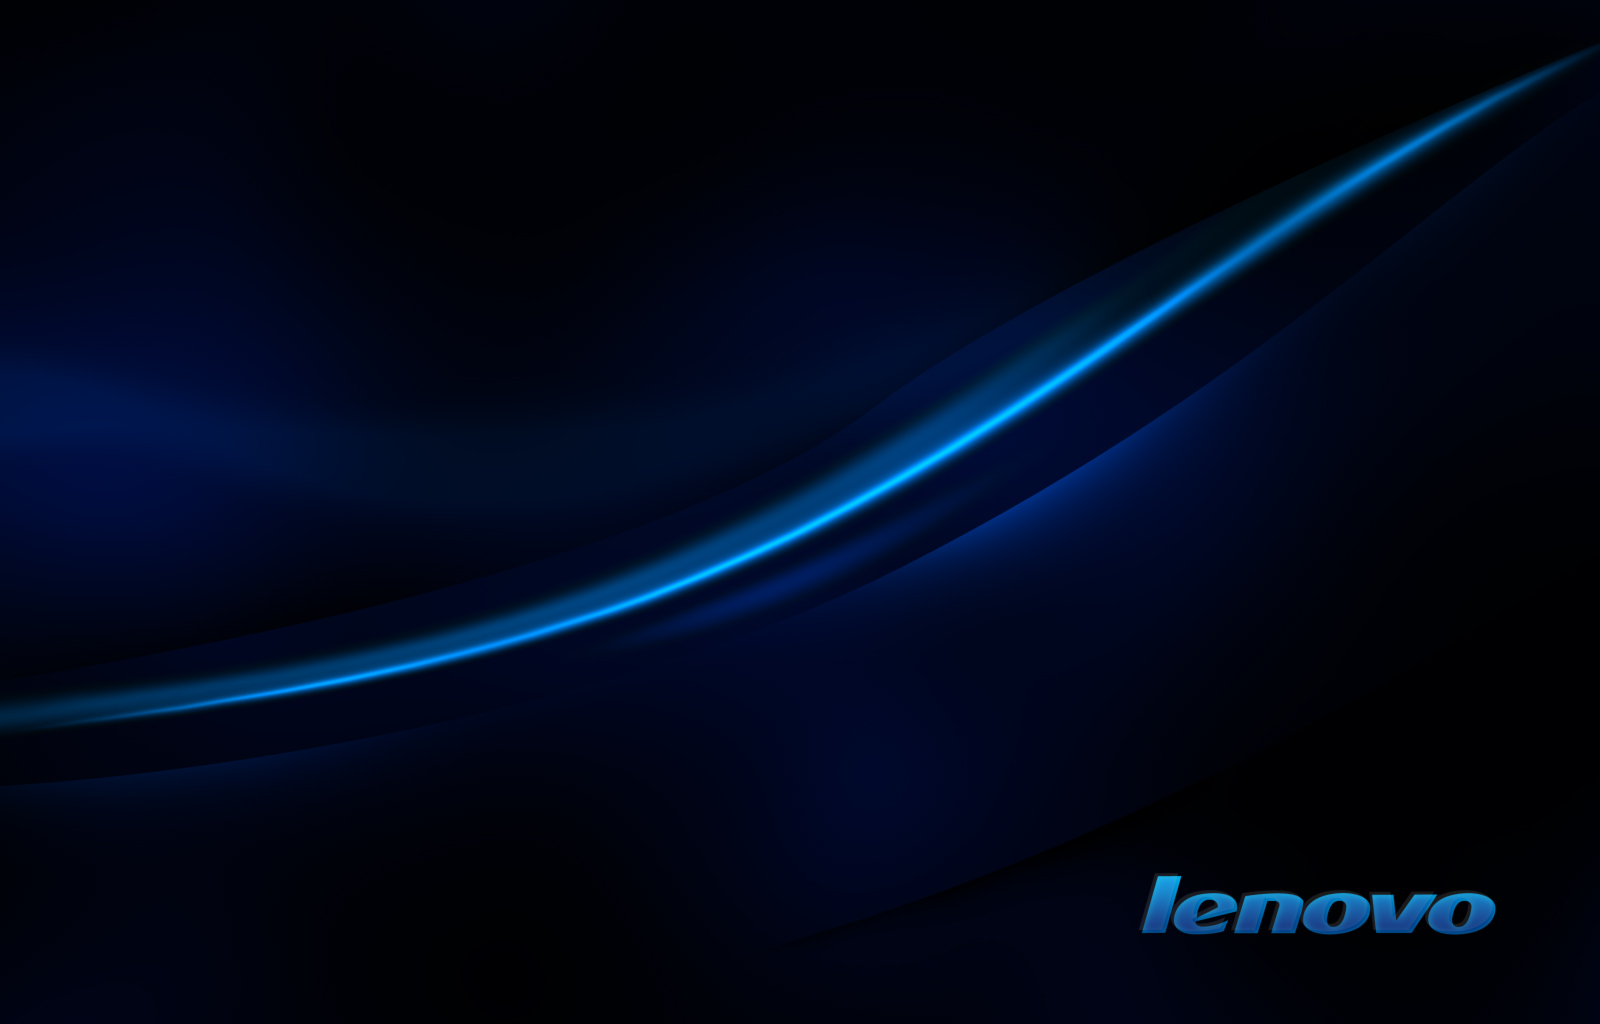 Lenovo Wallpaper 1080P WallpaperSafari